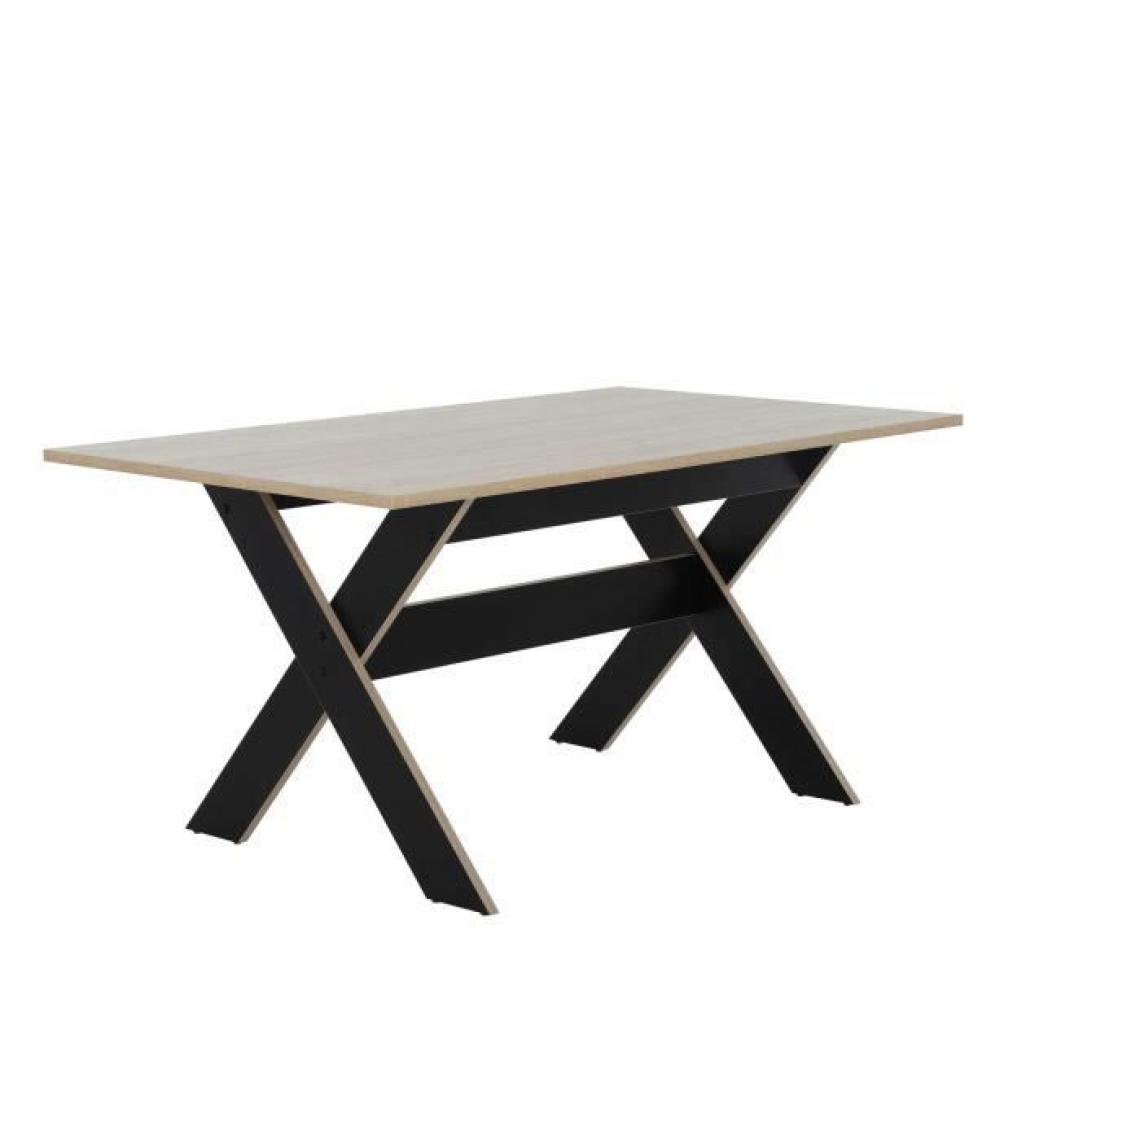 Gami - GAMI - table à manger - rectangulaire - décor chêne et noir - contemporain - medoc - l 160xp 90xh 76 cm - Tables à manger